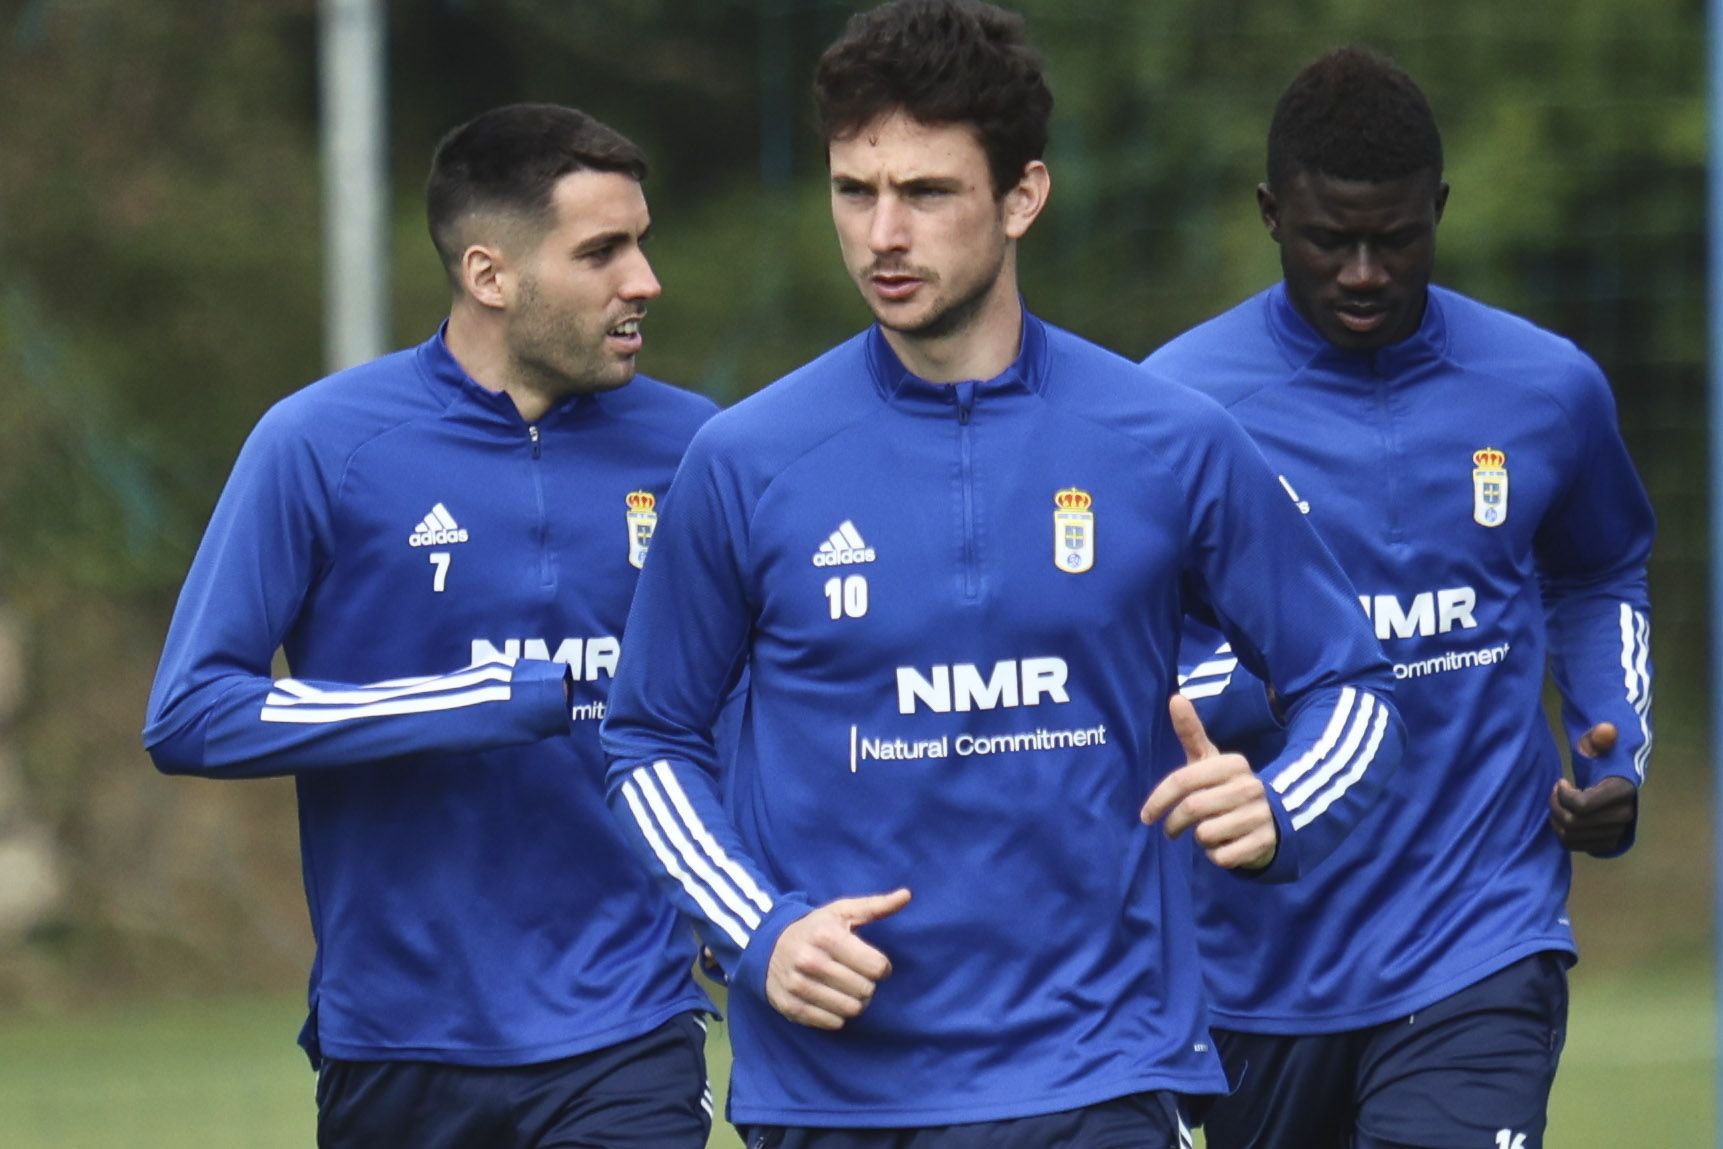 El entrenamiento del Oviedo tras perder en Girona